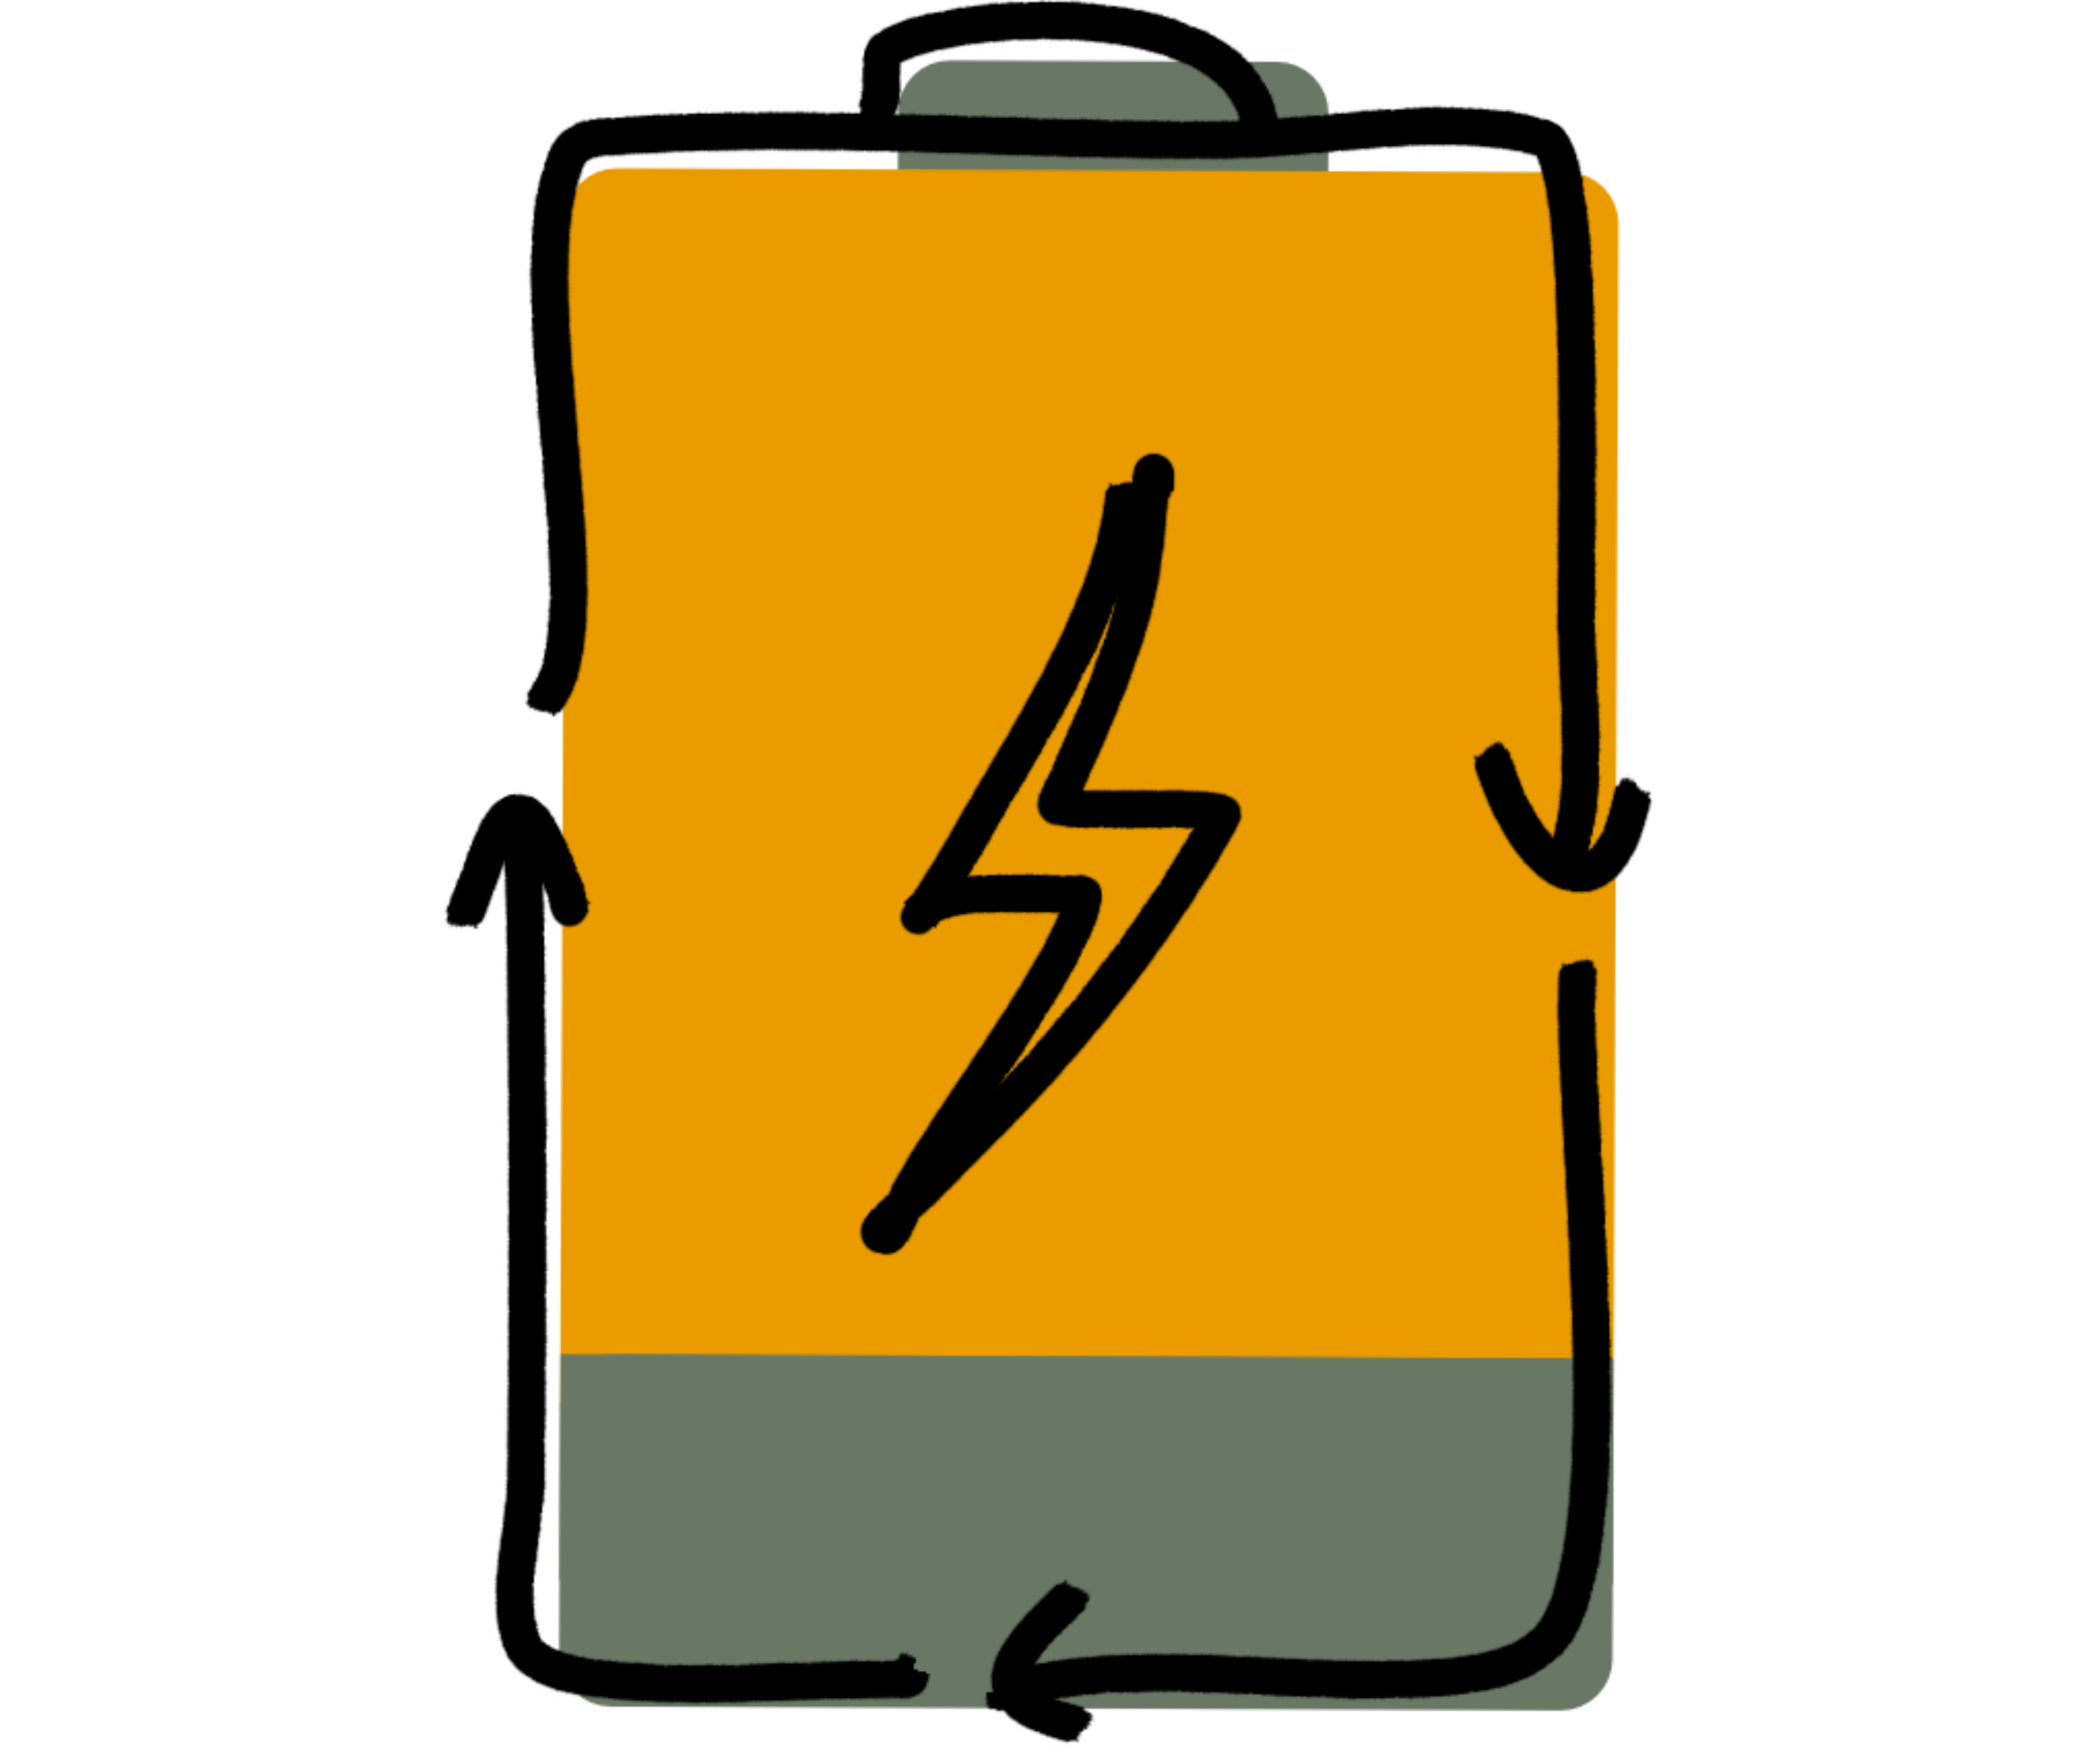 Tekening van een batterij met recycleerpijltjes als symbool voor "re-energize"